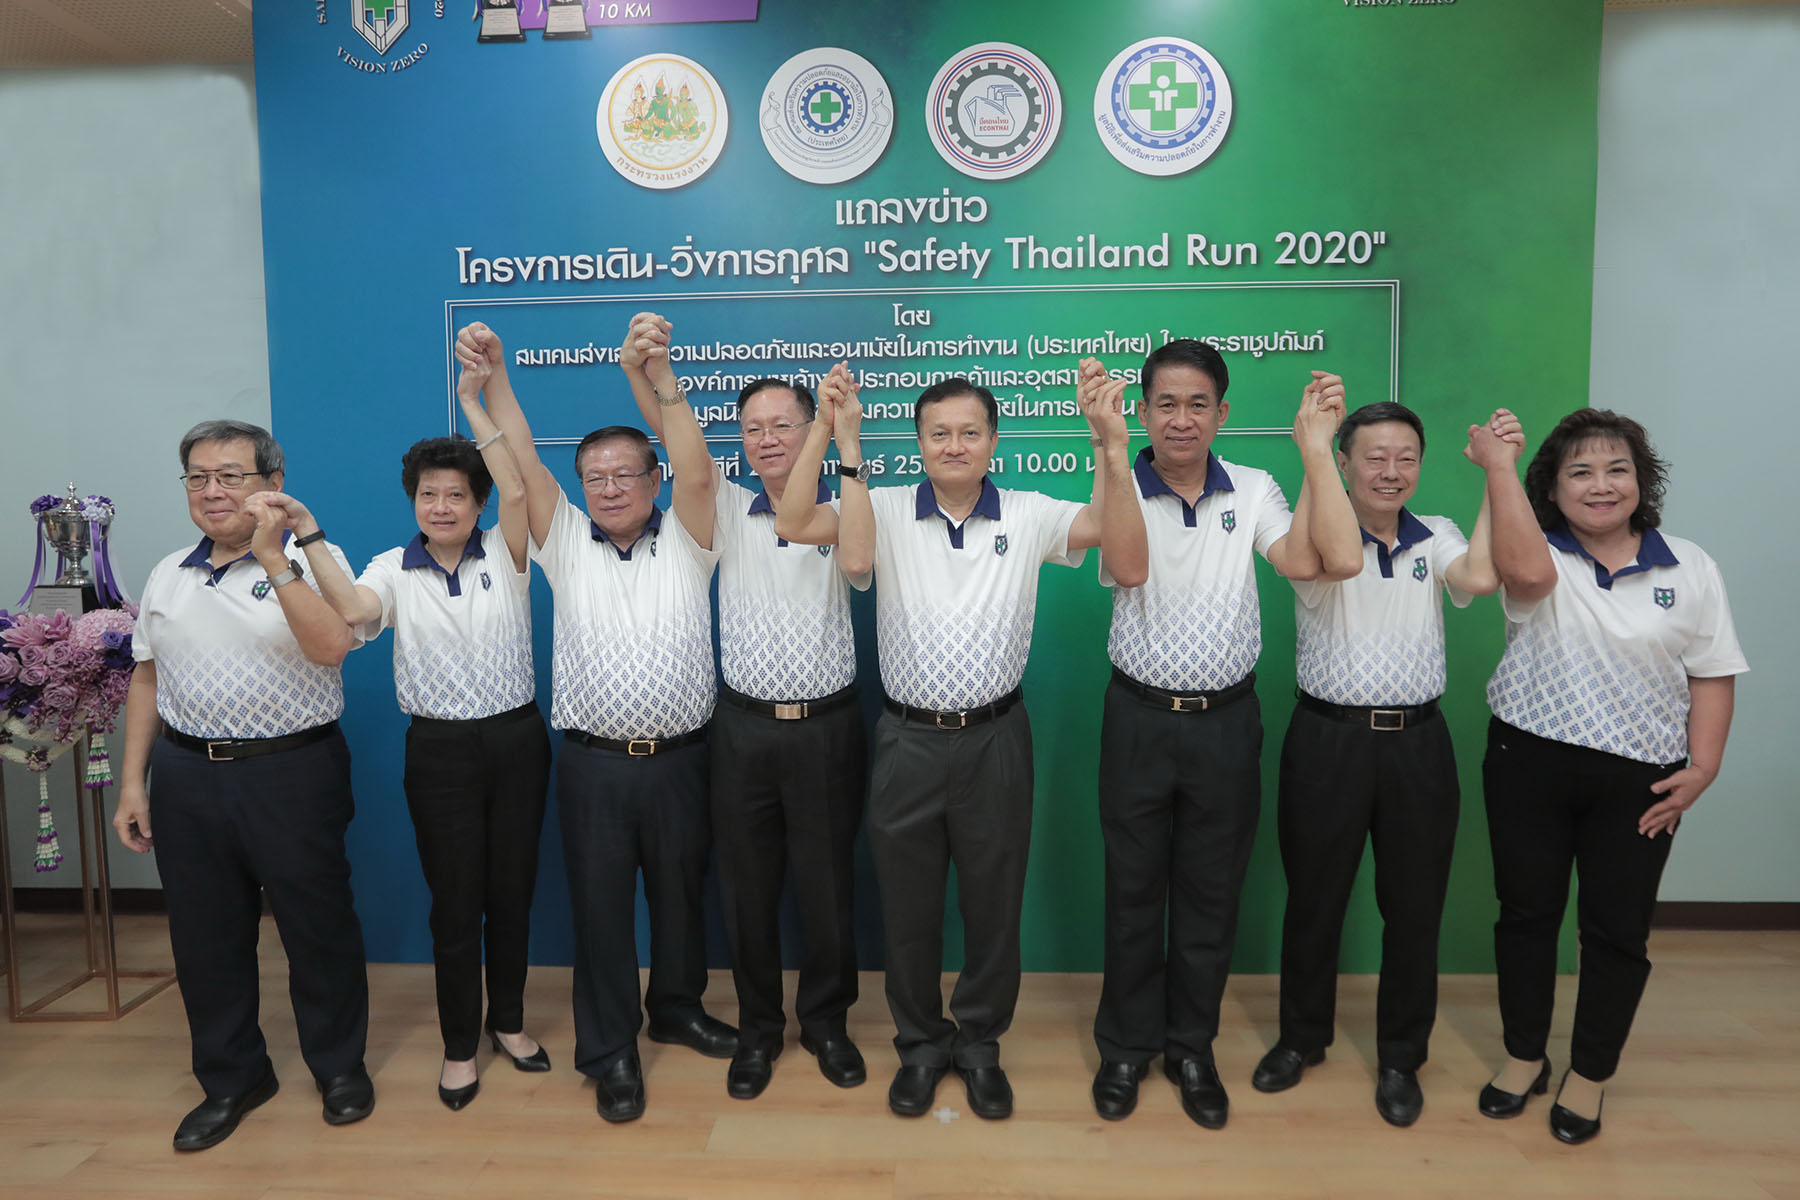 3 หน่วยงานหลักด้านความปลอดภัยในการทำงานแห่งชาติ ผนึกกำลังจัดโครงการเดิน-วิ่งการกุศล Safety Thailand Run 2020 ครั้งที่ 1